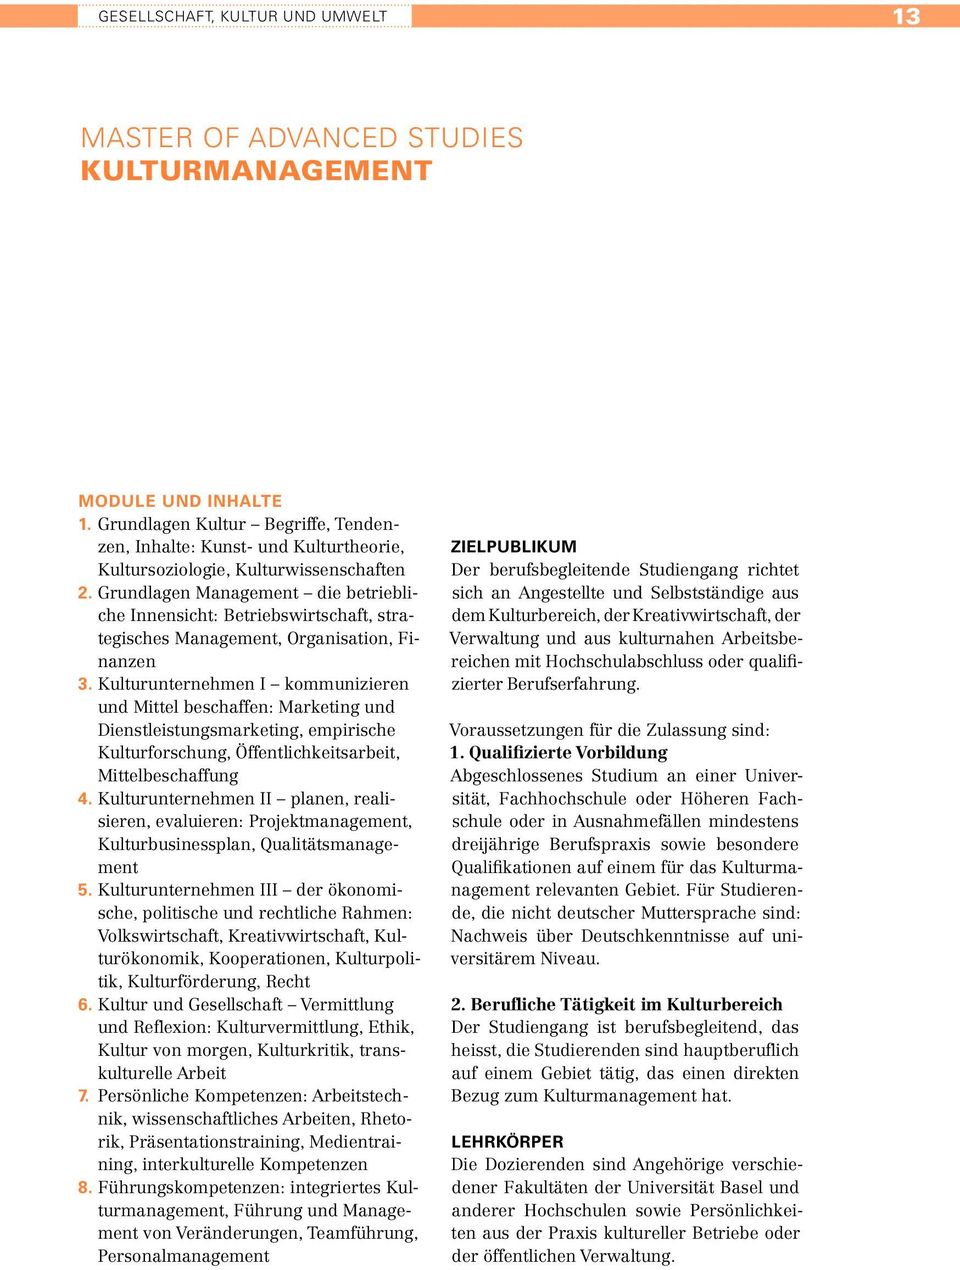 Grundlagen Management die betriebliche Innensicht: Betriebswirtschaft, strategisches Management, Organisation, Finanzen 3.